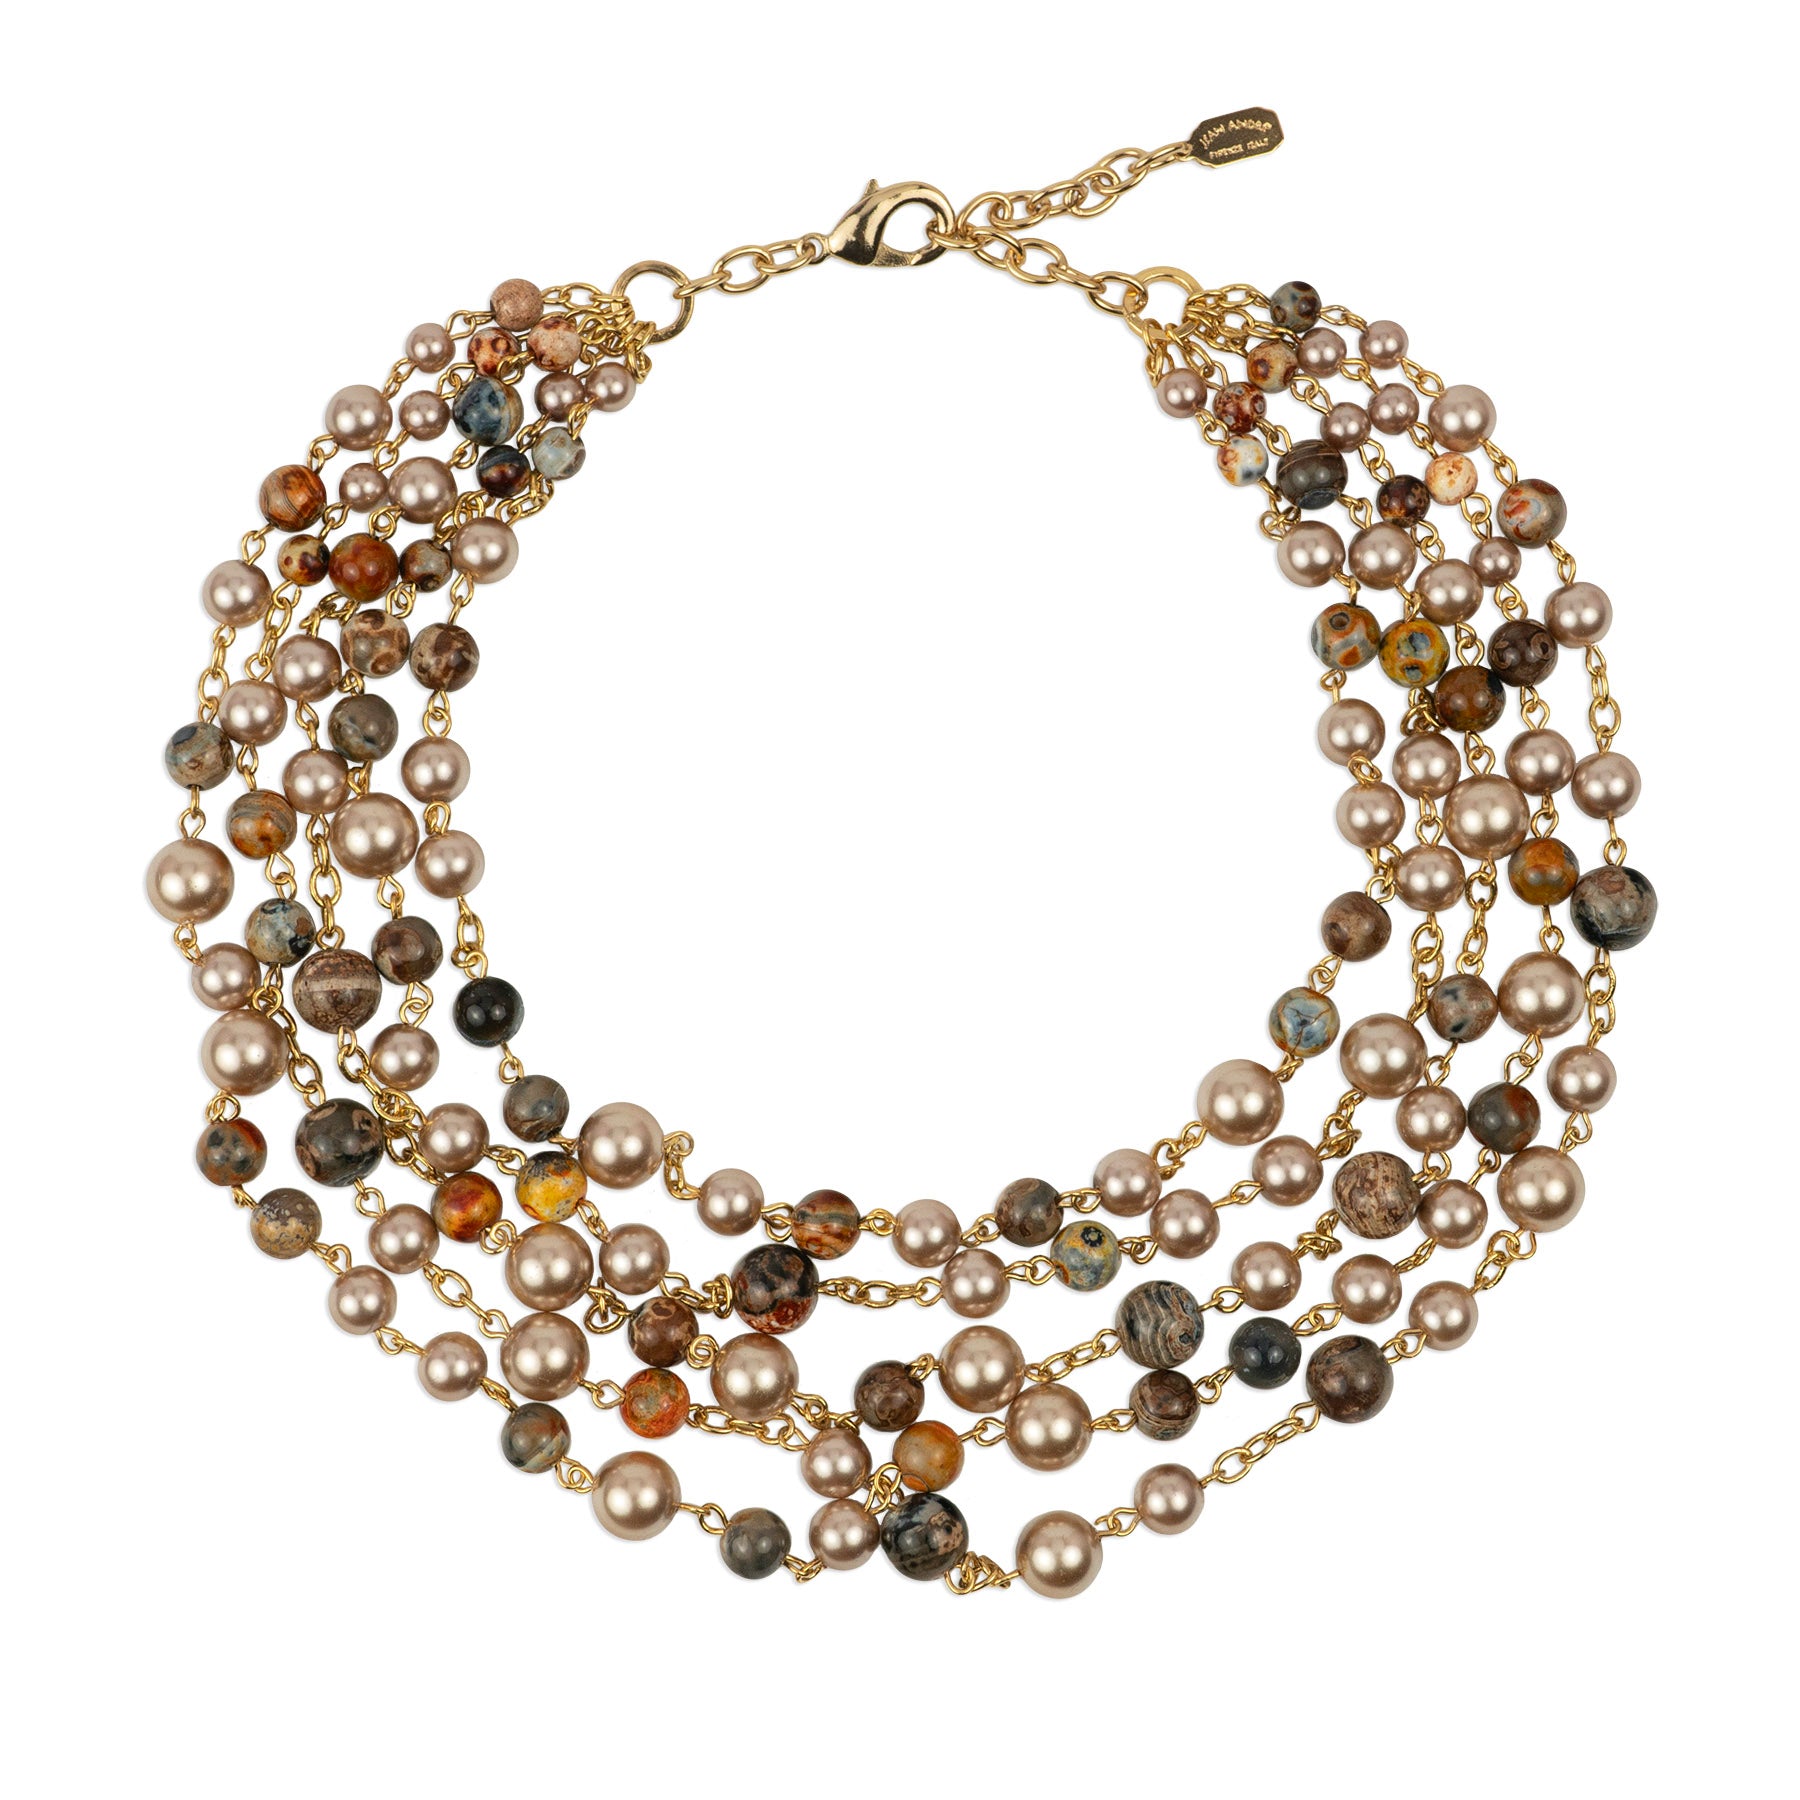 Multi-strand choker necklace in semi-precious stones and pearls